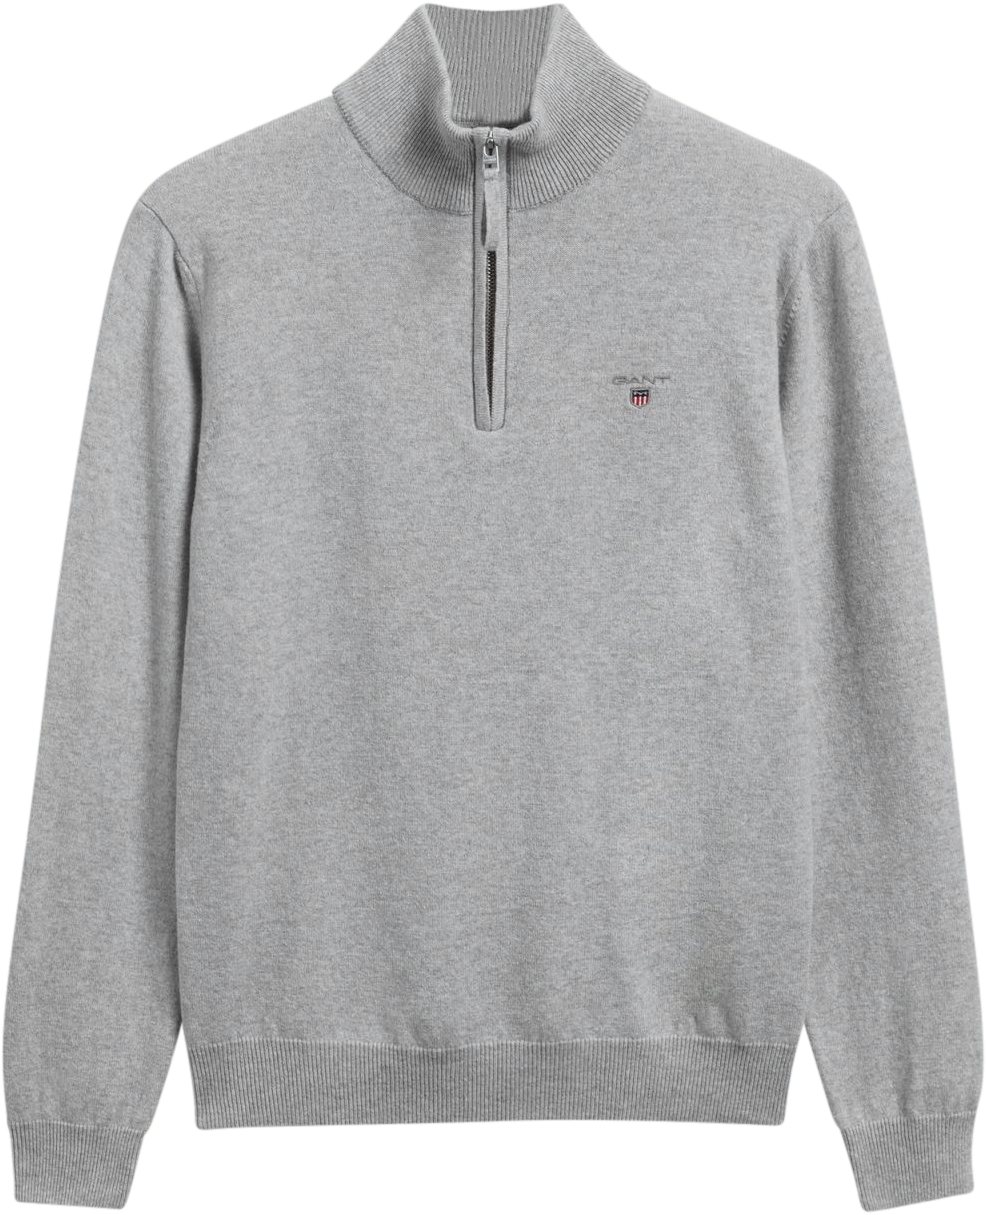 Super Fine Lambswool Half-Zip Sweater - Light Grey Melange